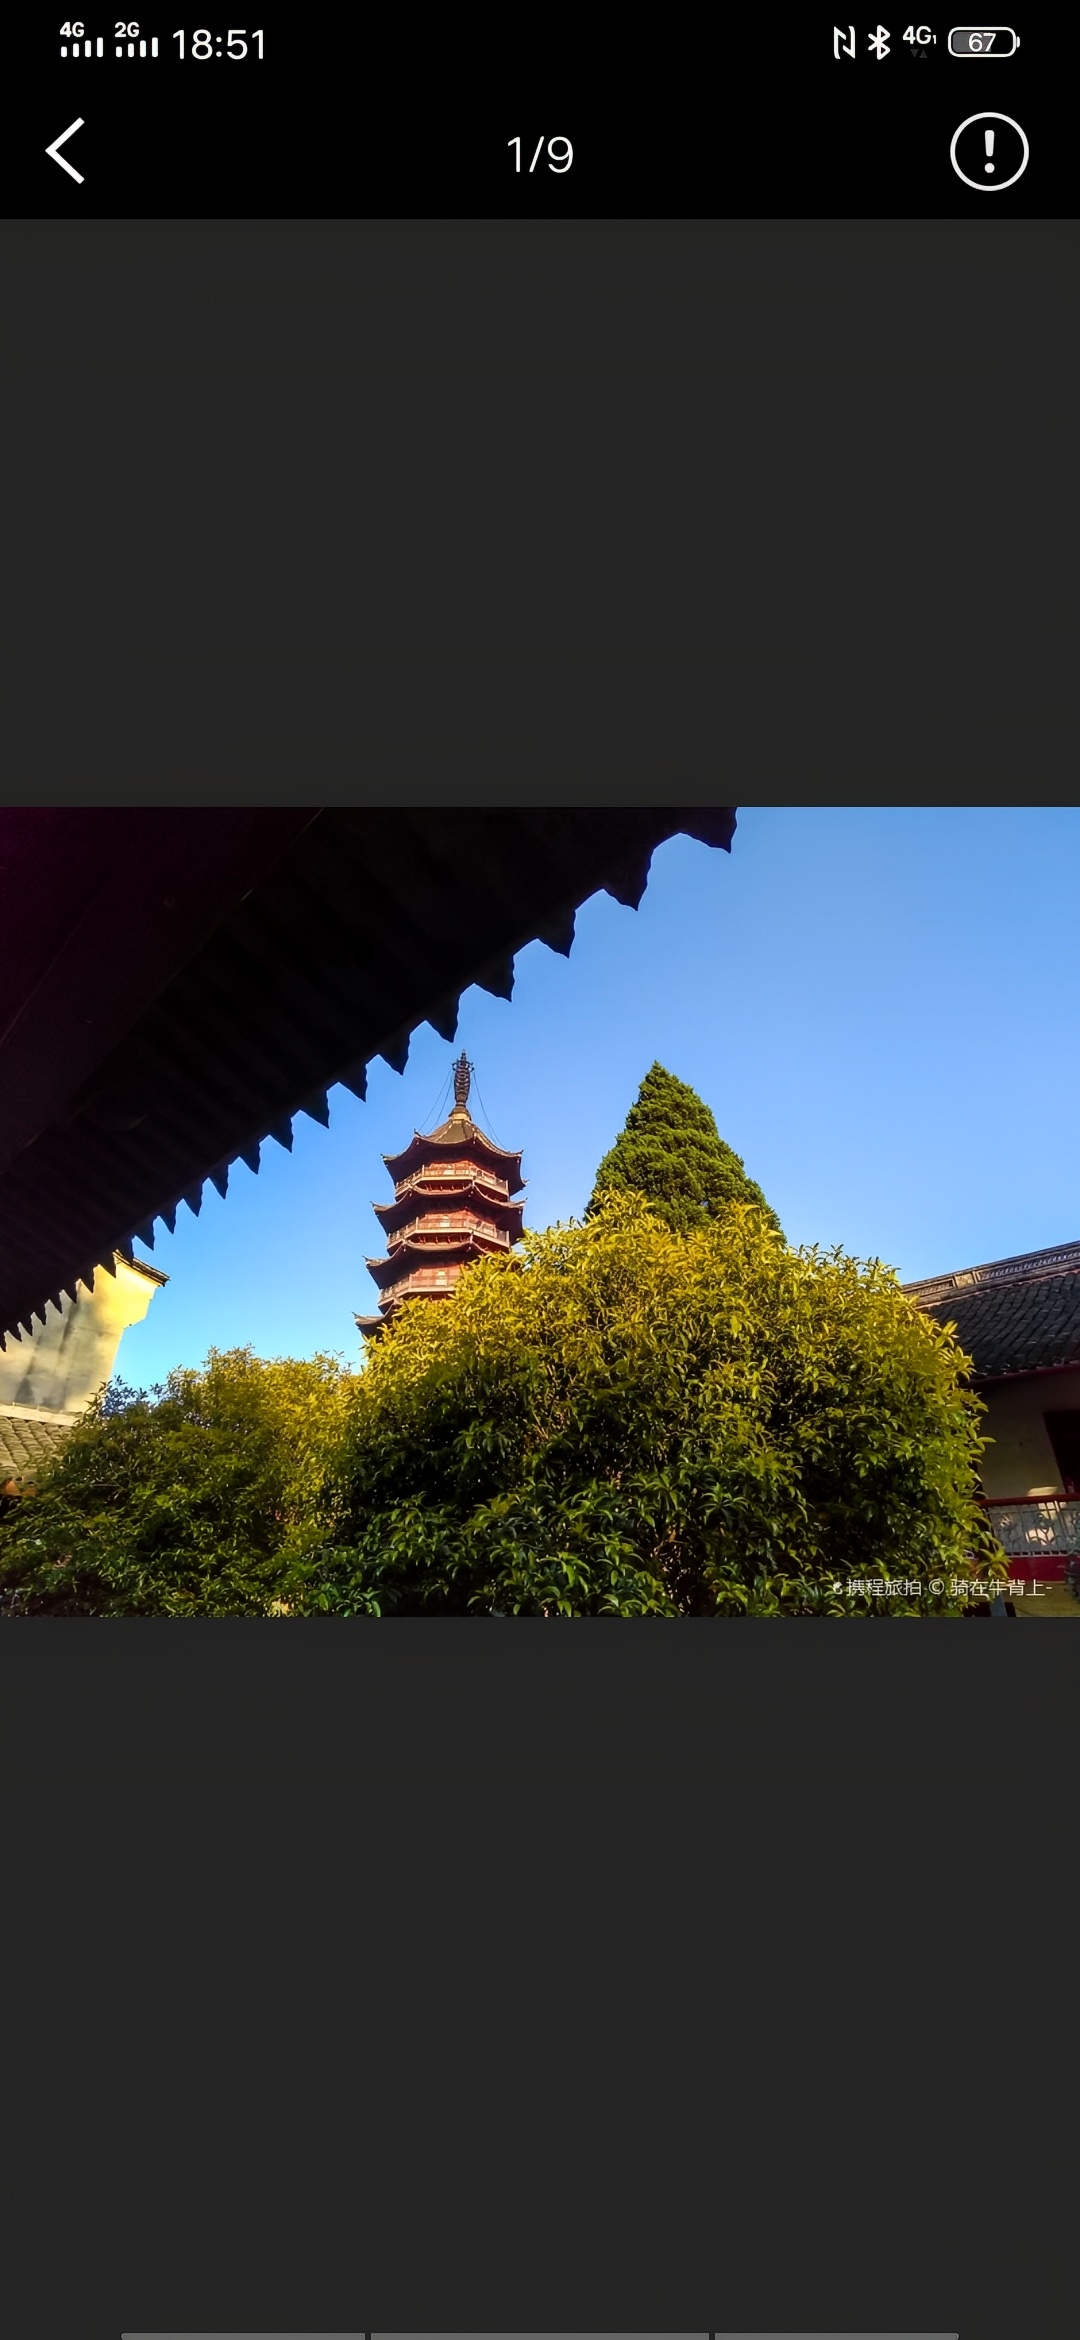 宁波不用门票的景点 阿育王寺位于宁波市区以东太白山麓华顶峰 下,是中国佛教“中华五山”之一,也是我 